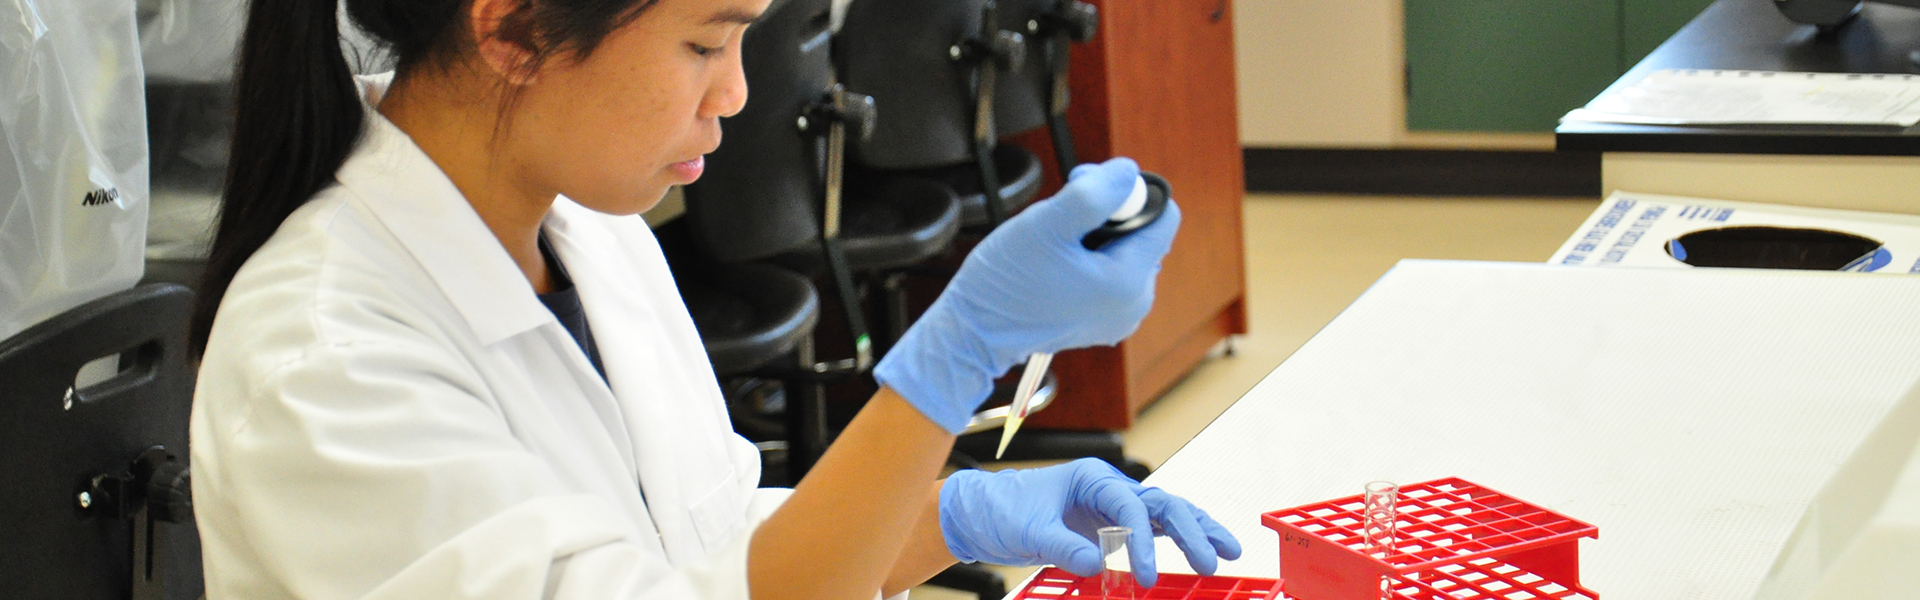 Étudiante en analyses biomédicales manipulant une pipette et une éprouvette en laboratoire